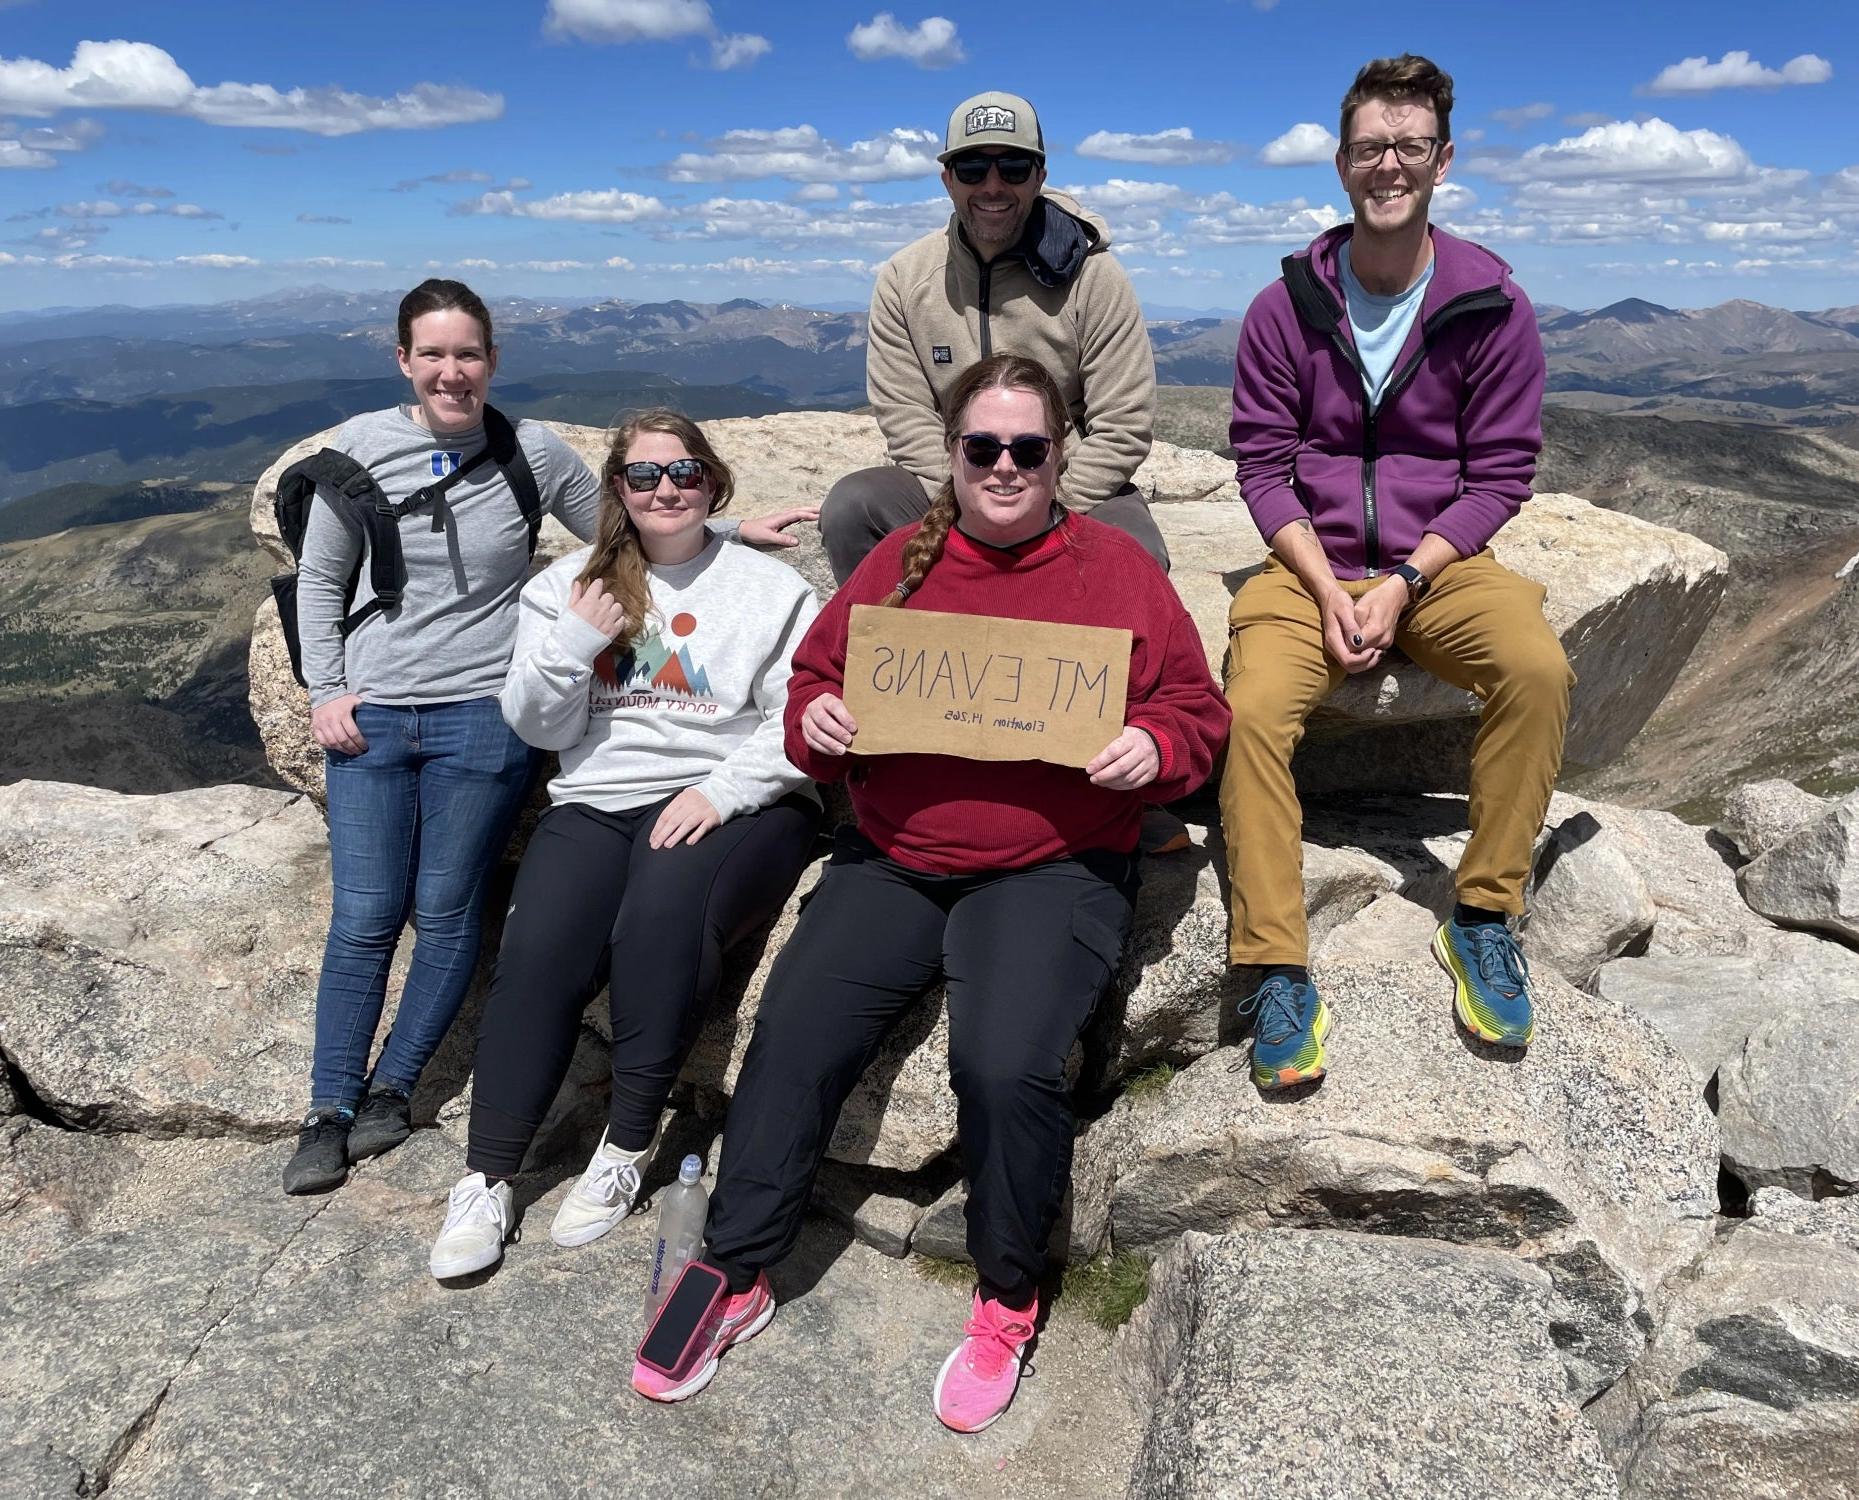 乔恩·维洛塔(Jon Velotta)和他的学生研究人员坐在蓝天山(以前被称为山)的山顶上. Evans.